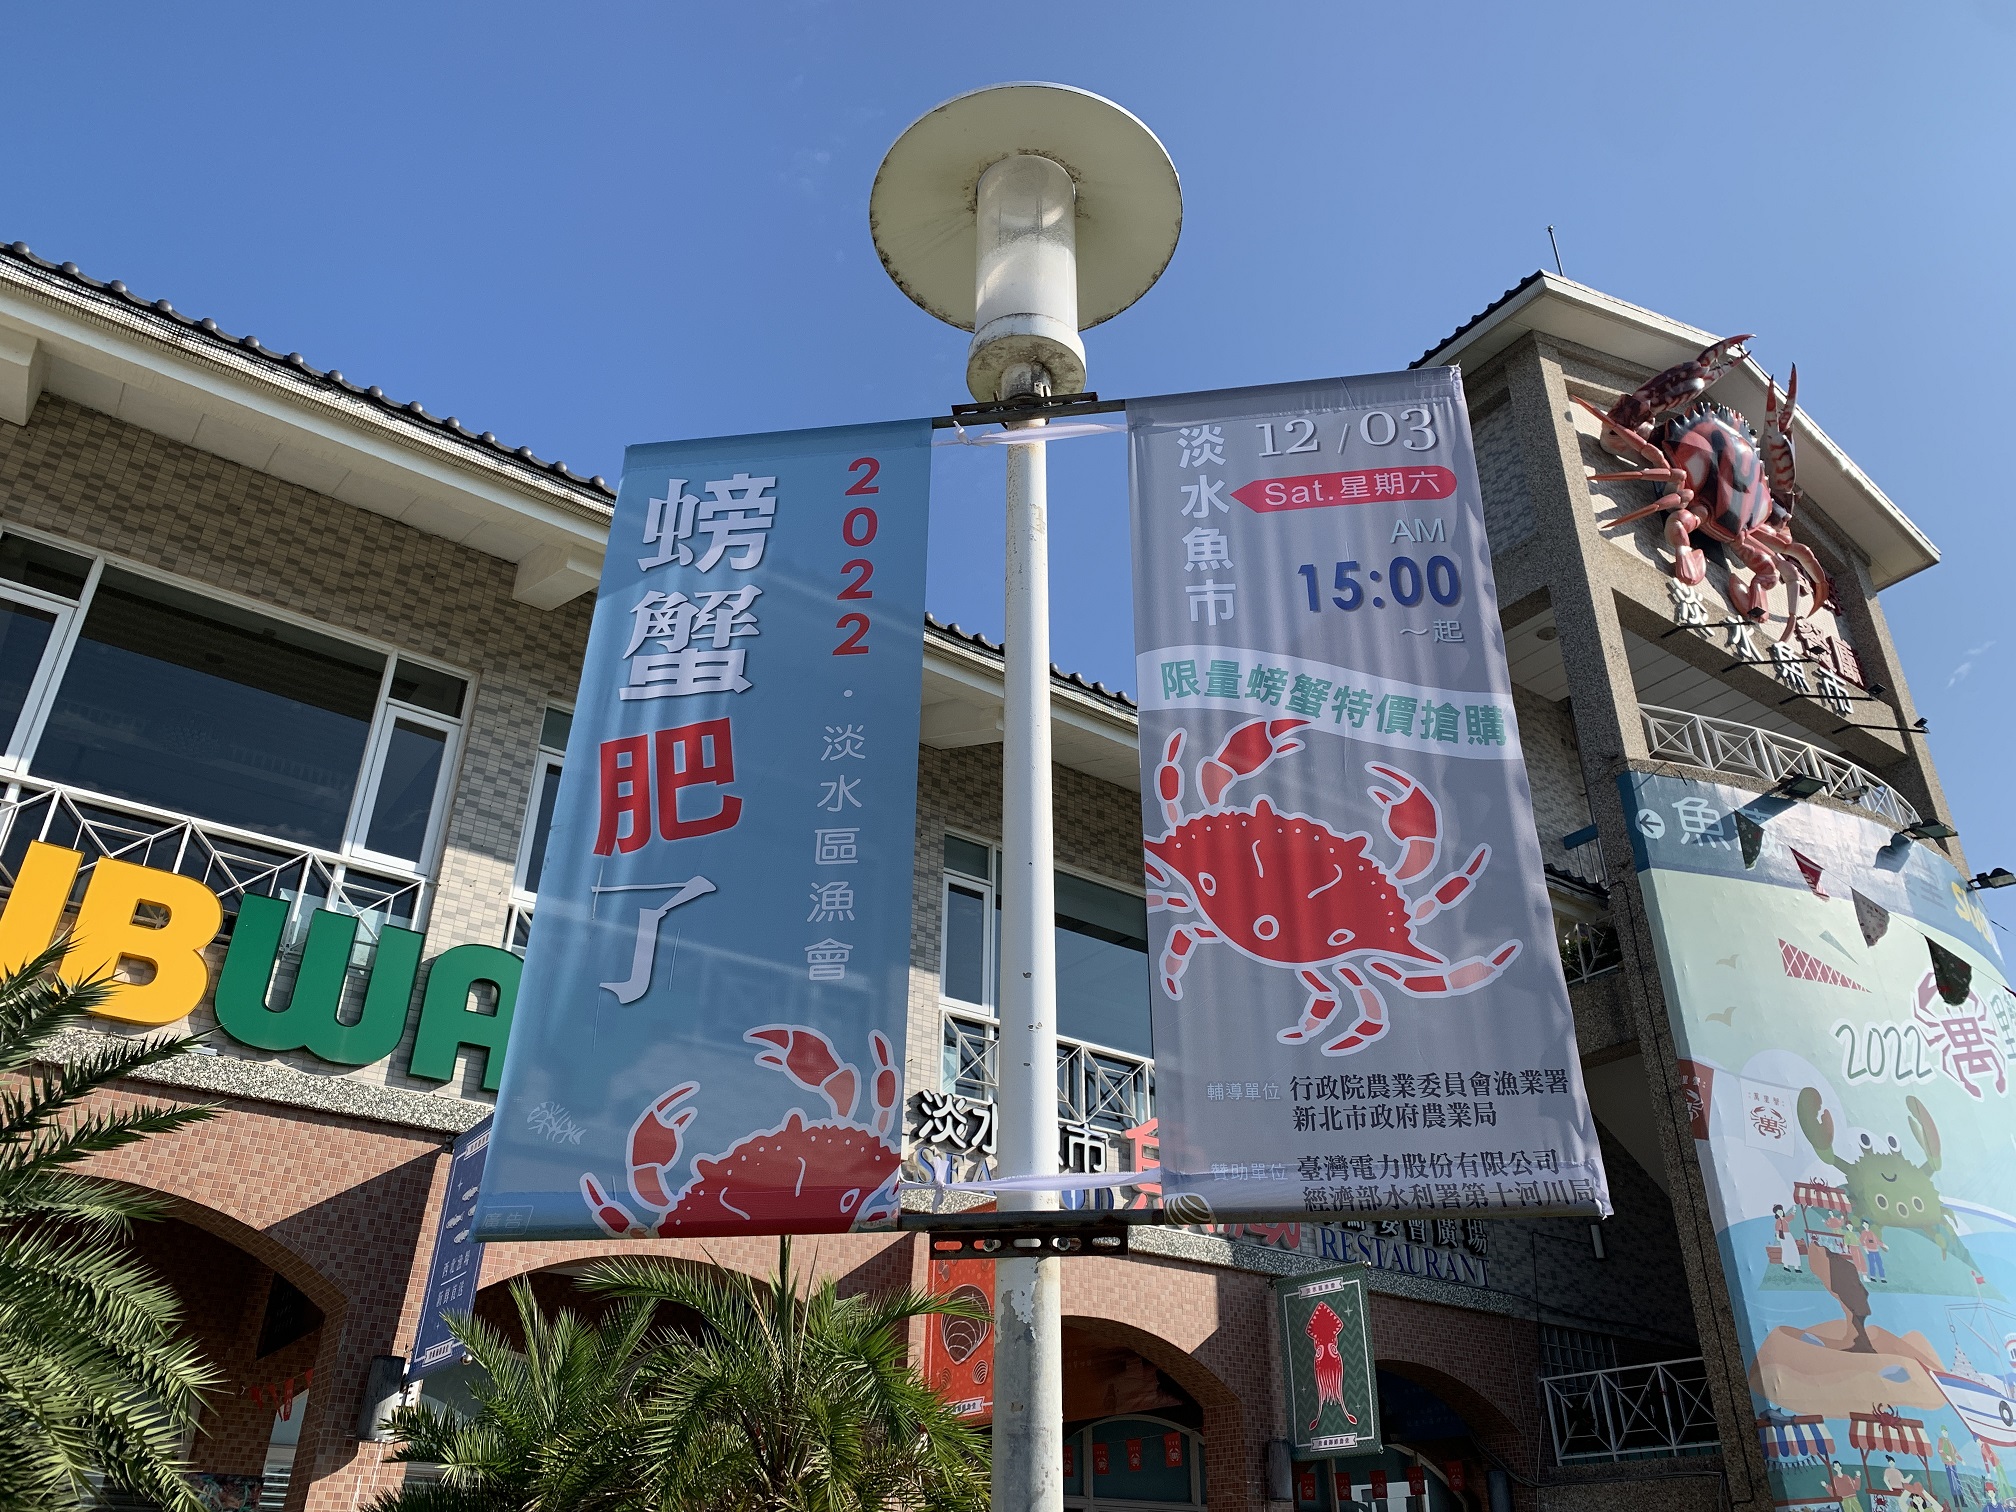 「2022螃蟹肥了」活動將於12月3日下午3時在淡水魚市前廣場舉